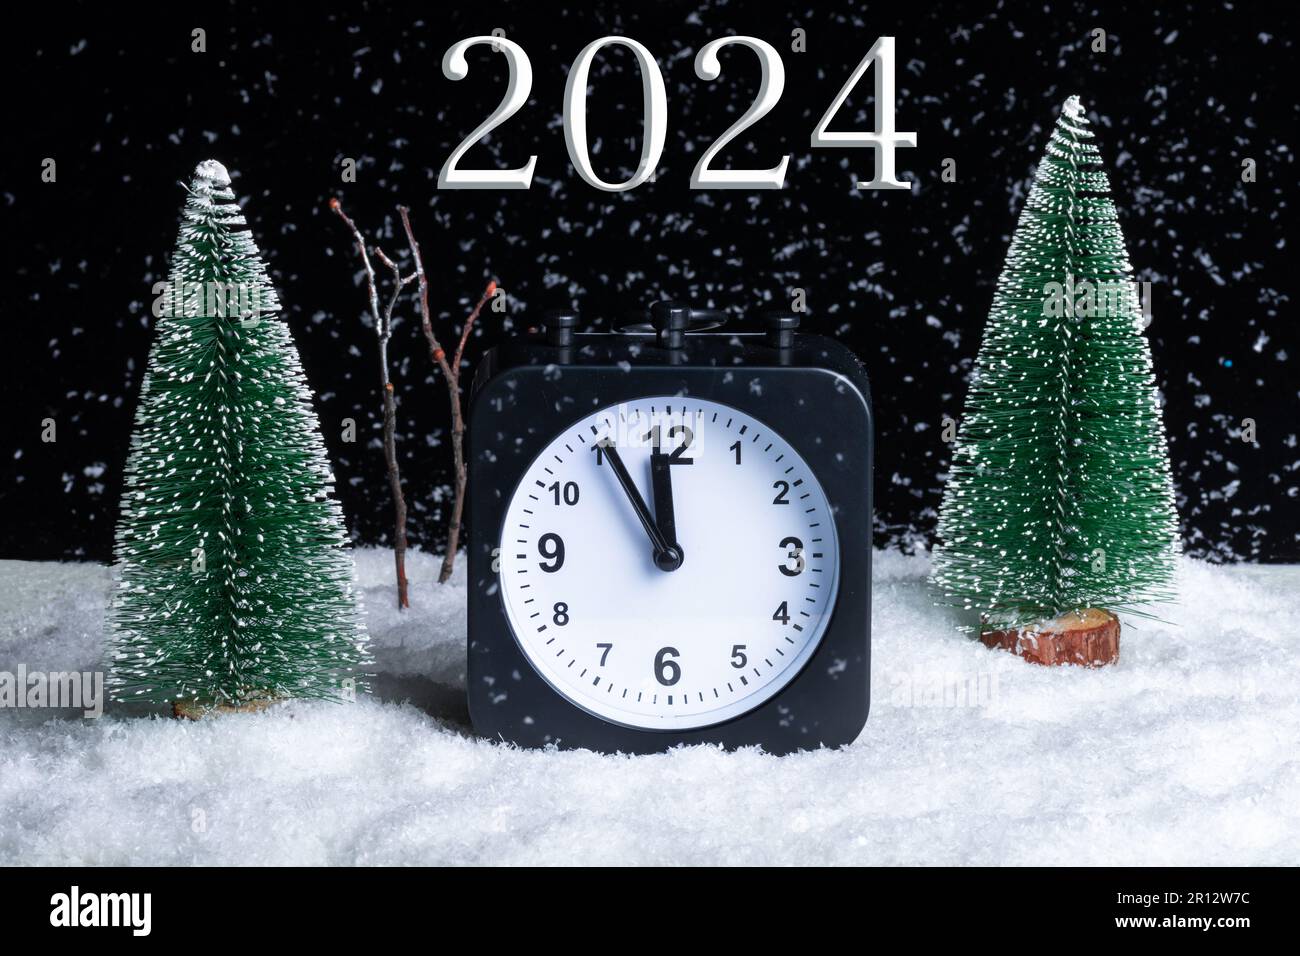 Capodanno 2024. Vigilia di Natale. Composizione Foresta invernale notturna, Blizzard e sveglia nella neve. Inverno. Natale Foto Stock